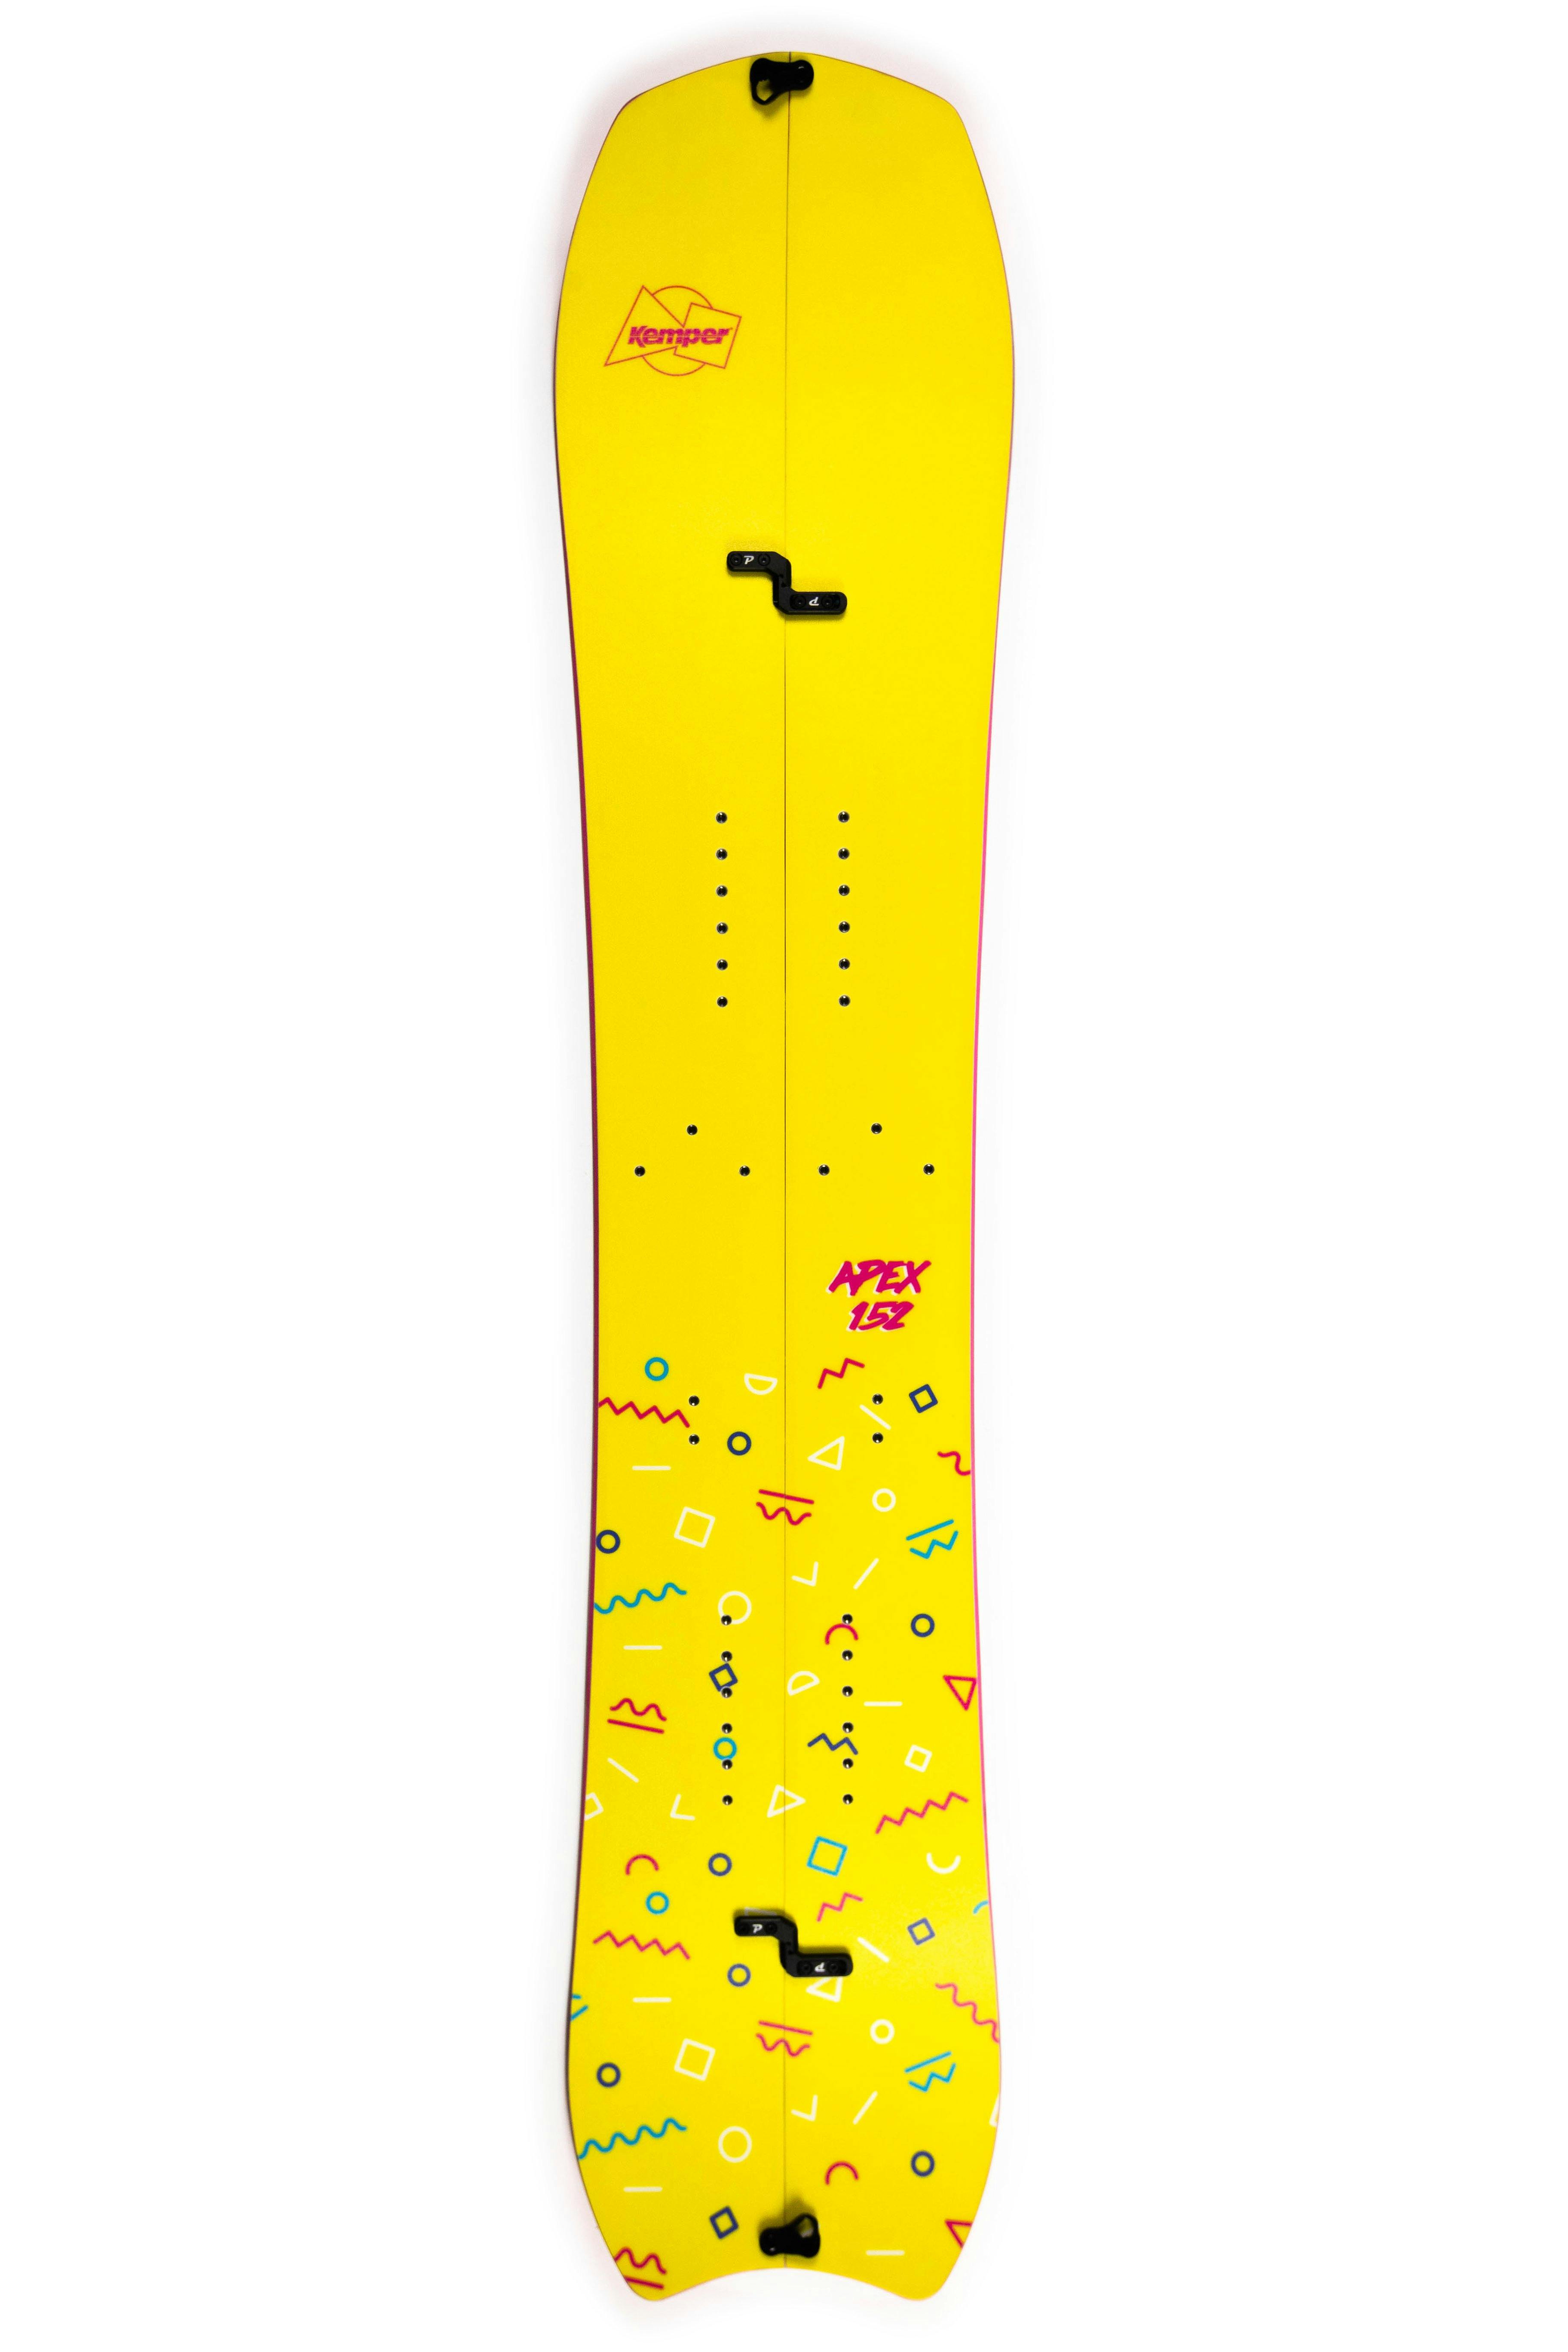 Kemper Apex Splitboard · 2021 · 160 cm